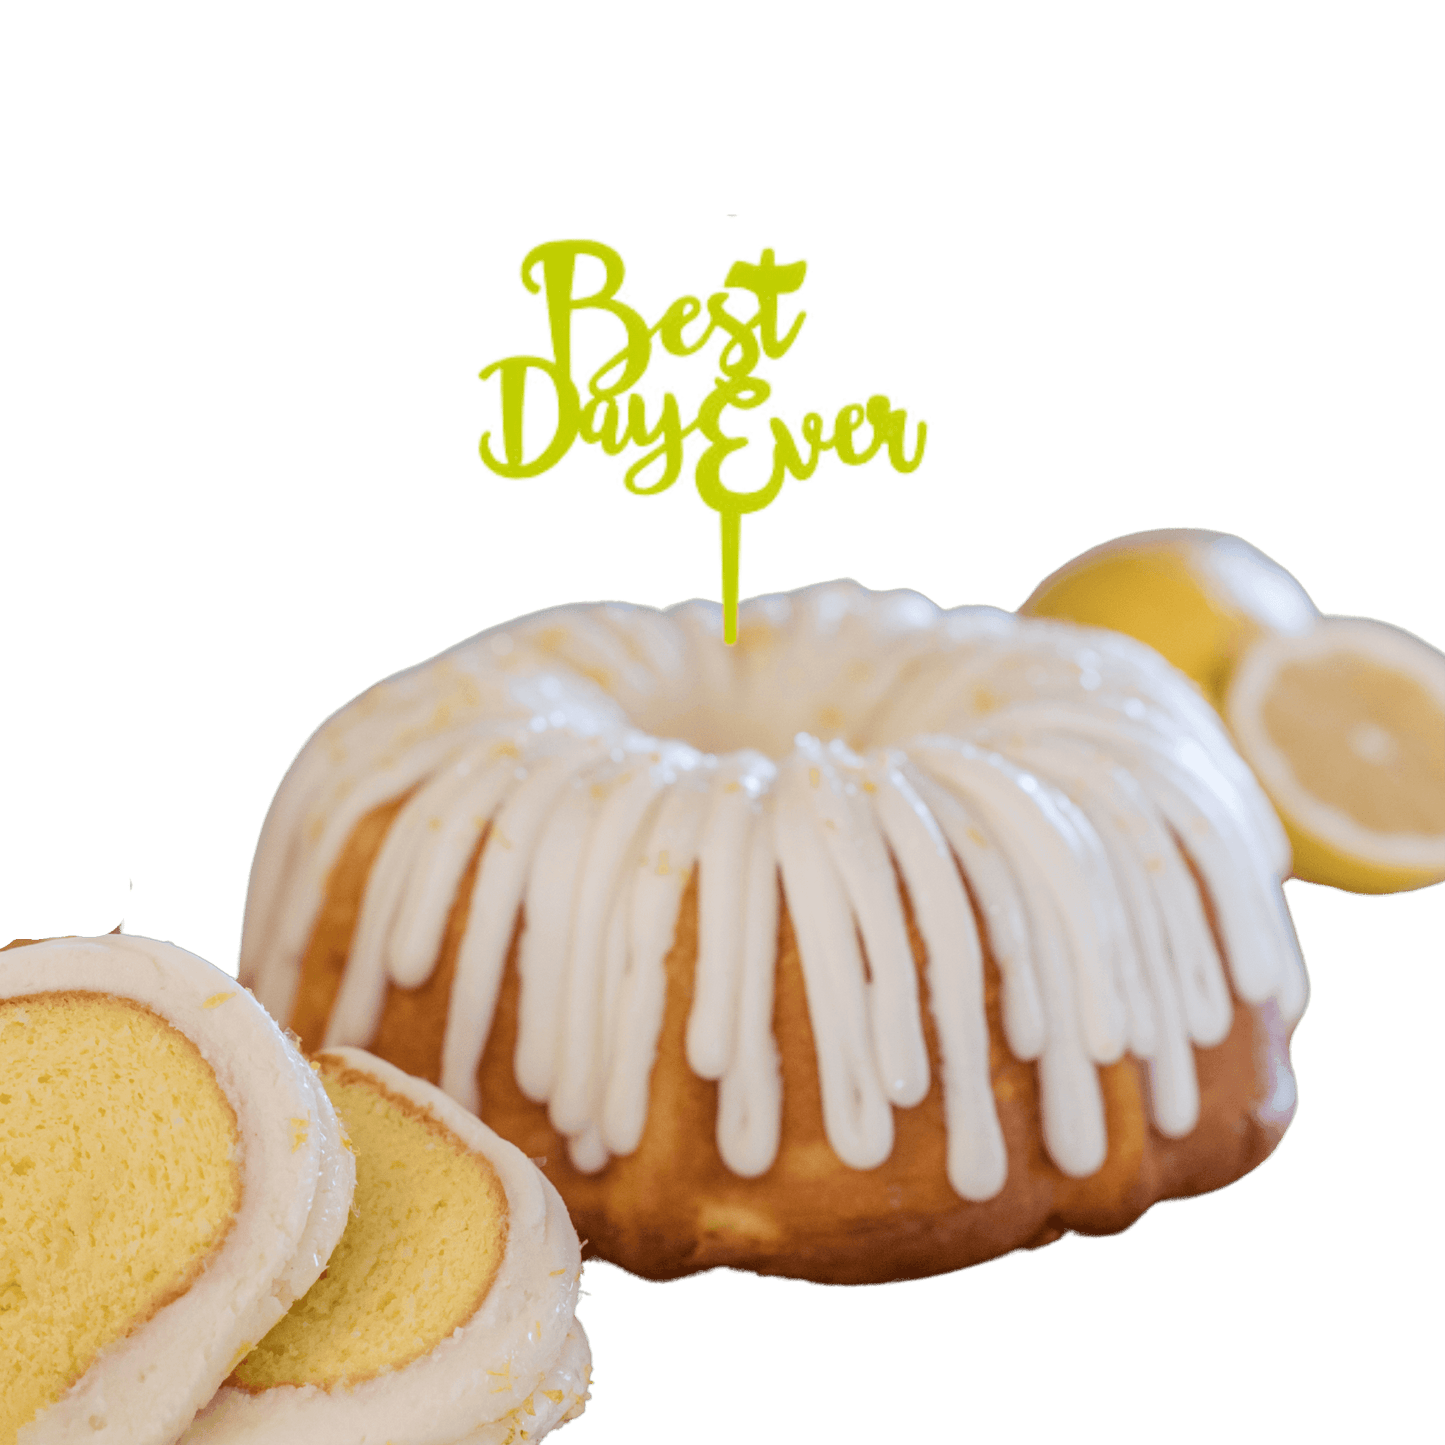 Lemon Squeeze Lime "BEST DAY EVER" Candle Holder Bundt Cake - Bundt Cakes